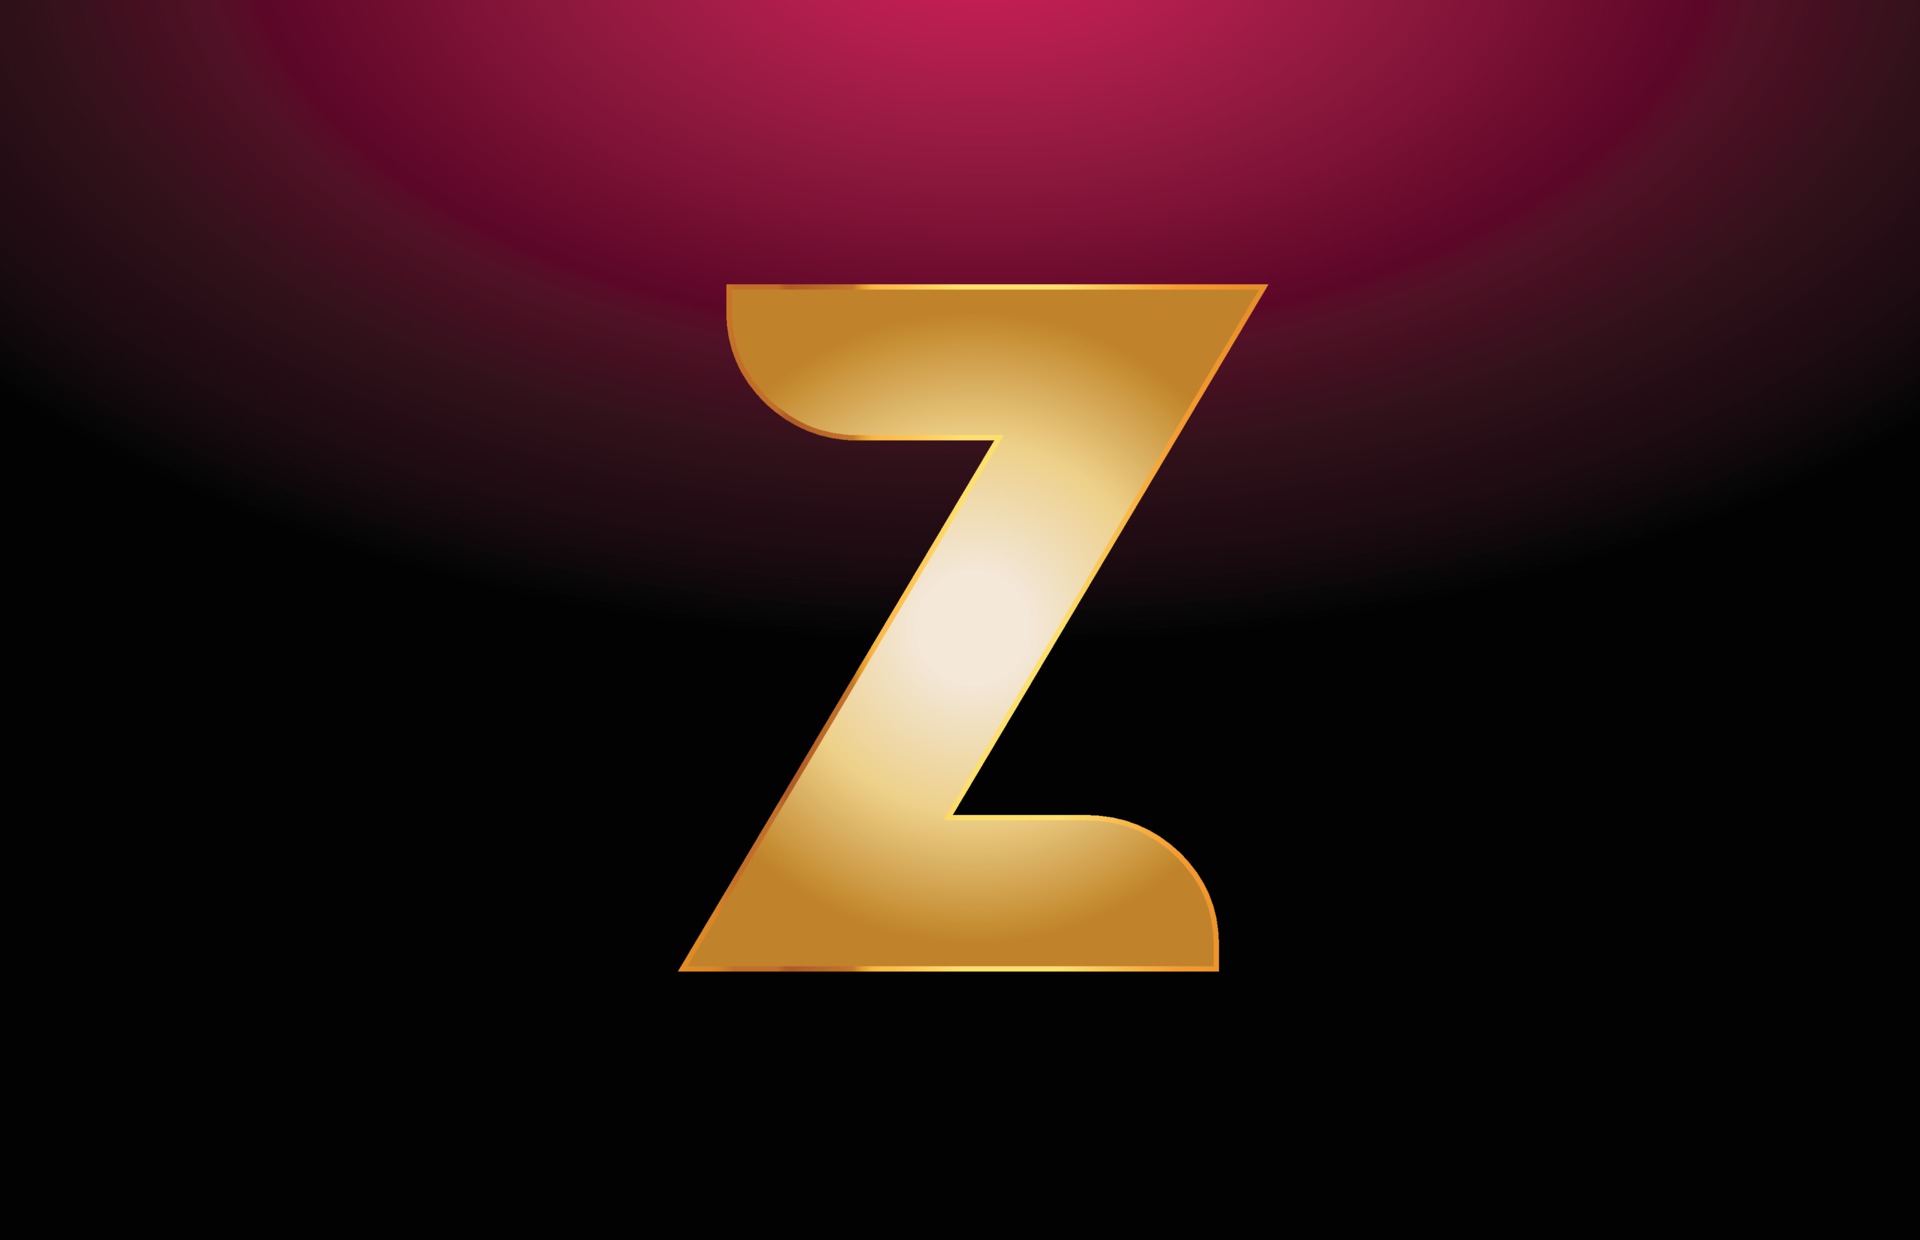 golden metal alphabet letter Z logo company icon design 3376016 Vector ...